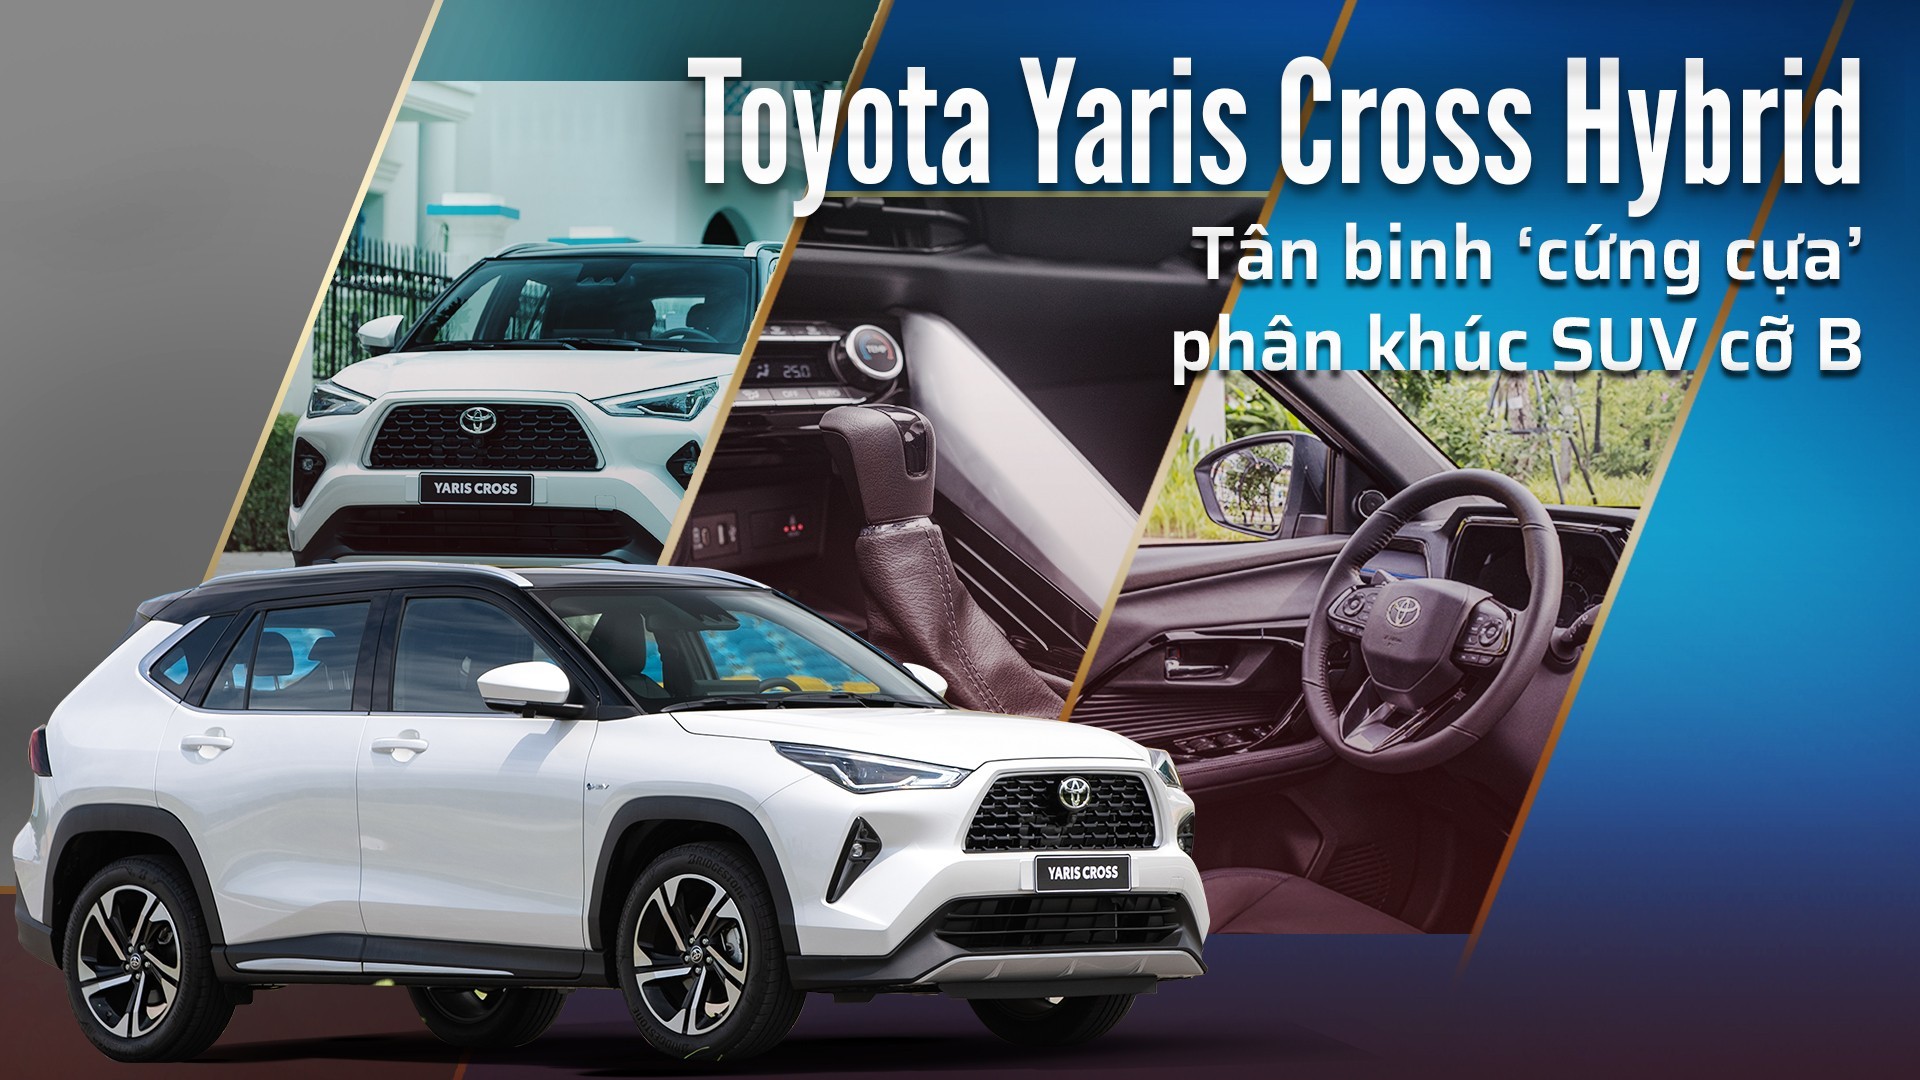 Toyota Yaris Cross Hybrid - Tân binh ‘cứng cựa’ phân khúc SUV cỡ B